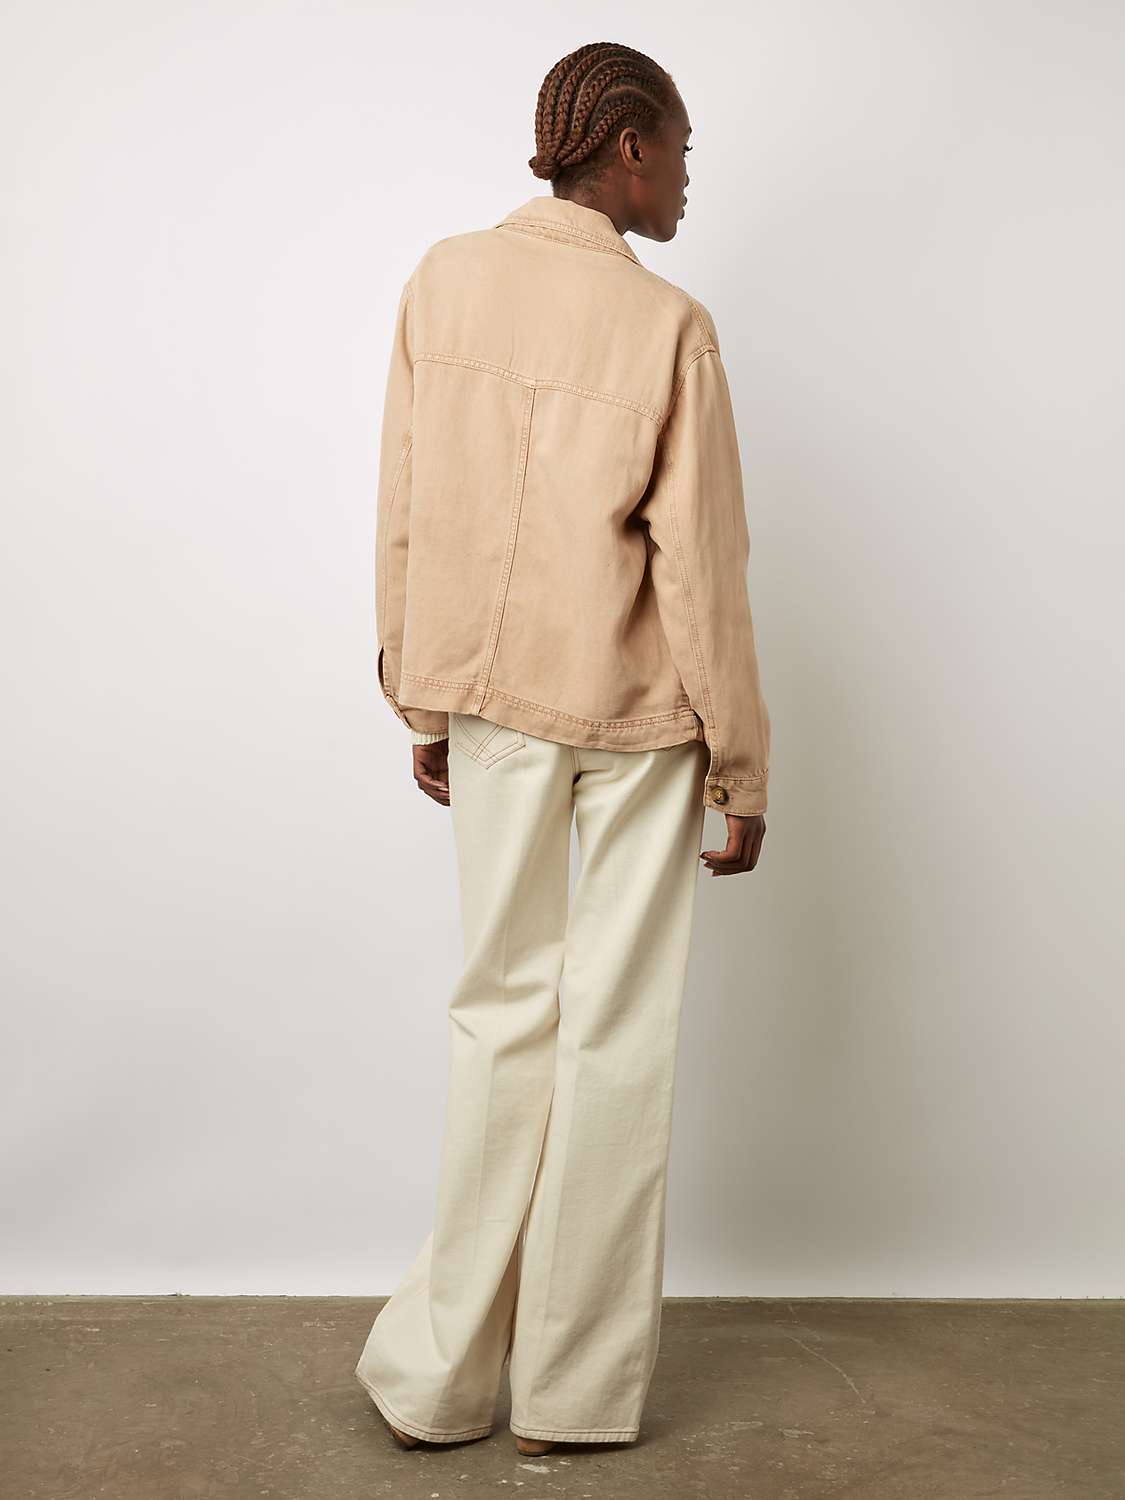 Buy Gerard Darel Brianna Linen Blend Jacket, Sand Online at johnlewis.com